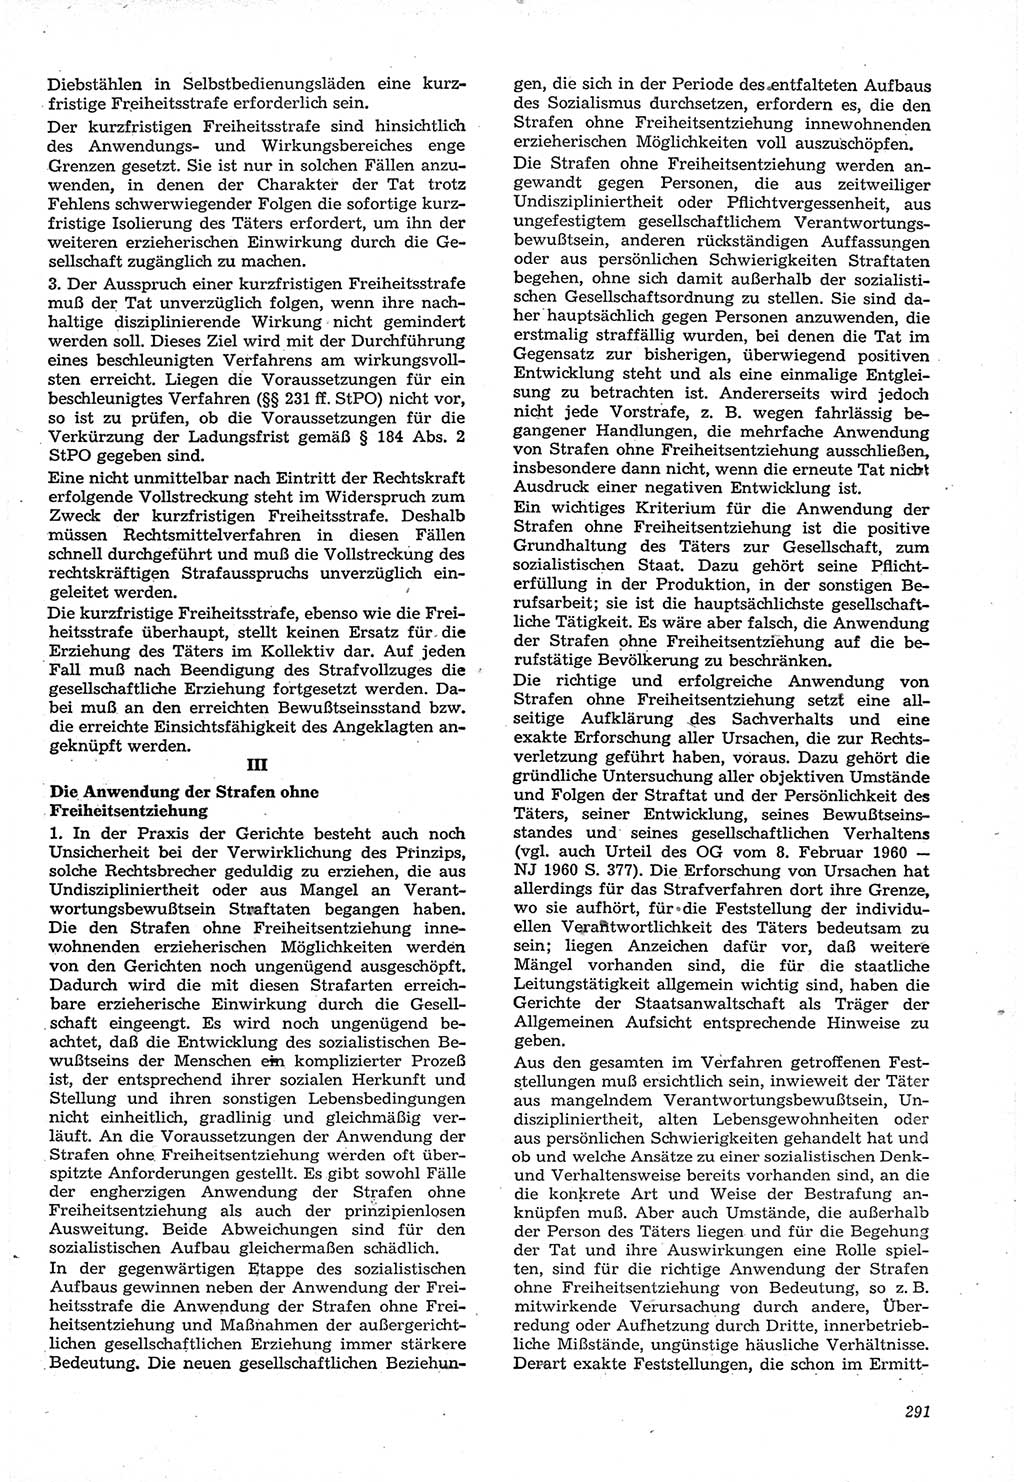 Neue Justiz (NJ), Zeitschrift für Recht und Rechtswissenschaft [Deutsche Demokratische Republik (DDR)], 15. Jahrgang 1961, Seite 291 (NJ DDR 1961, S. 291)